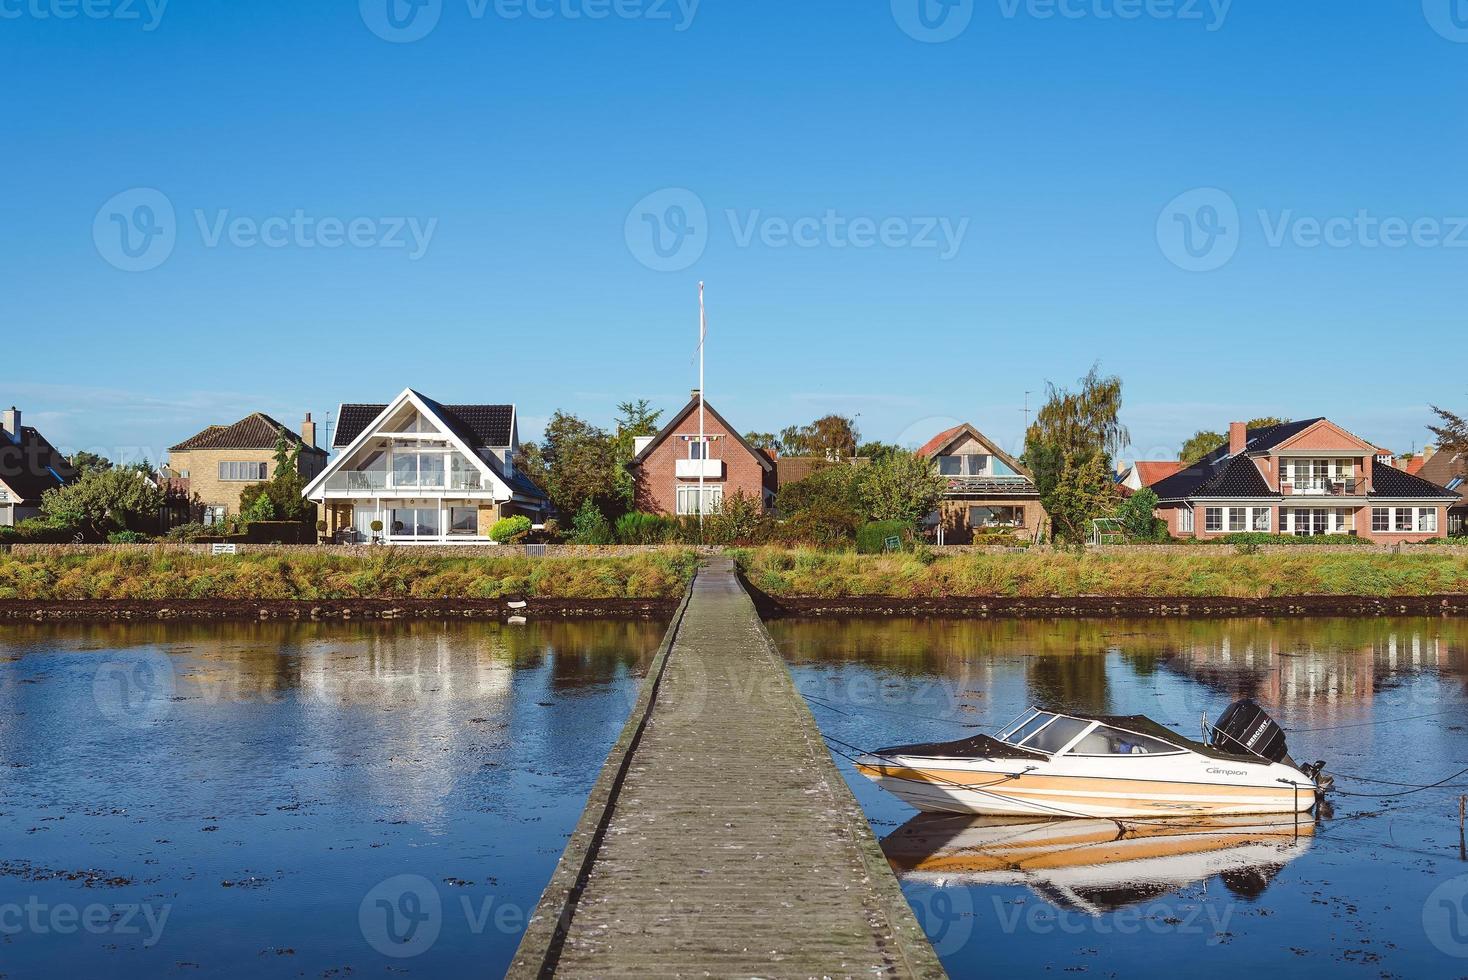 village moderne près de dragor, danemark - 21 septembre 2015. maisons scandinaves de cottage, quai en bois et bateau à moteur reflétés sur l'eau du détroit d'oresund. photo